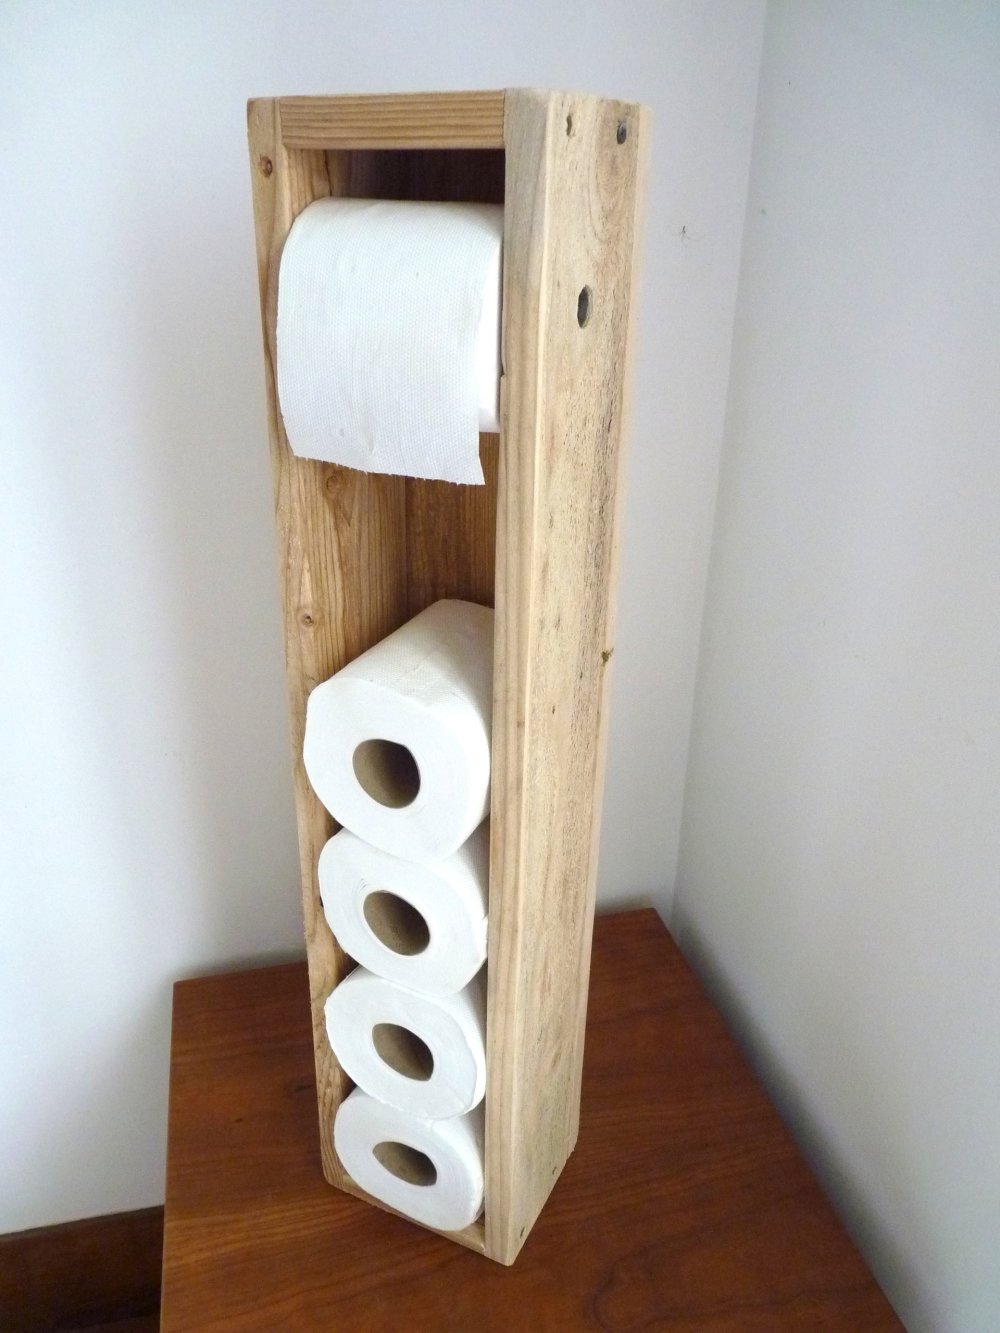 Porte Papier Toilette Support Papier Toilettes Acrylique pour Salle de Bain